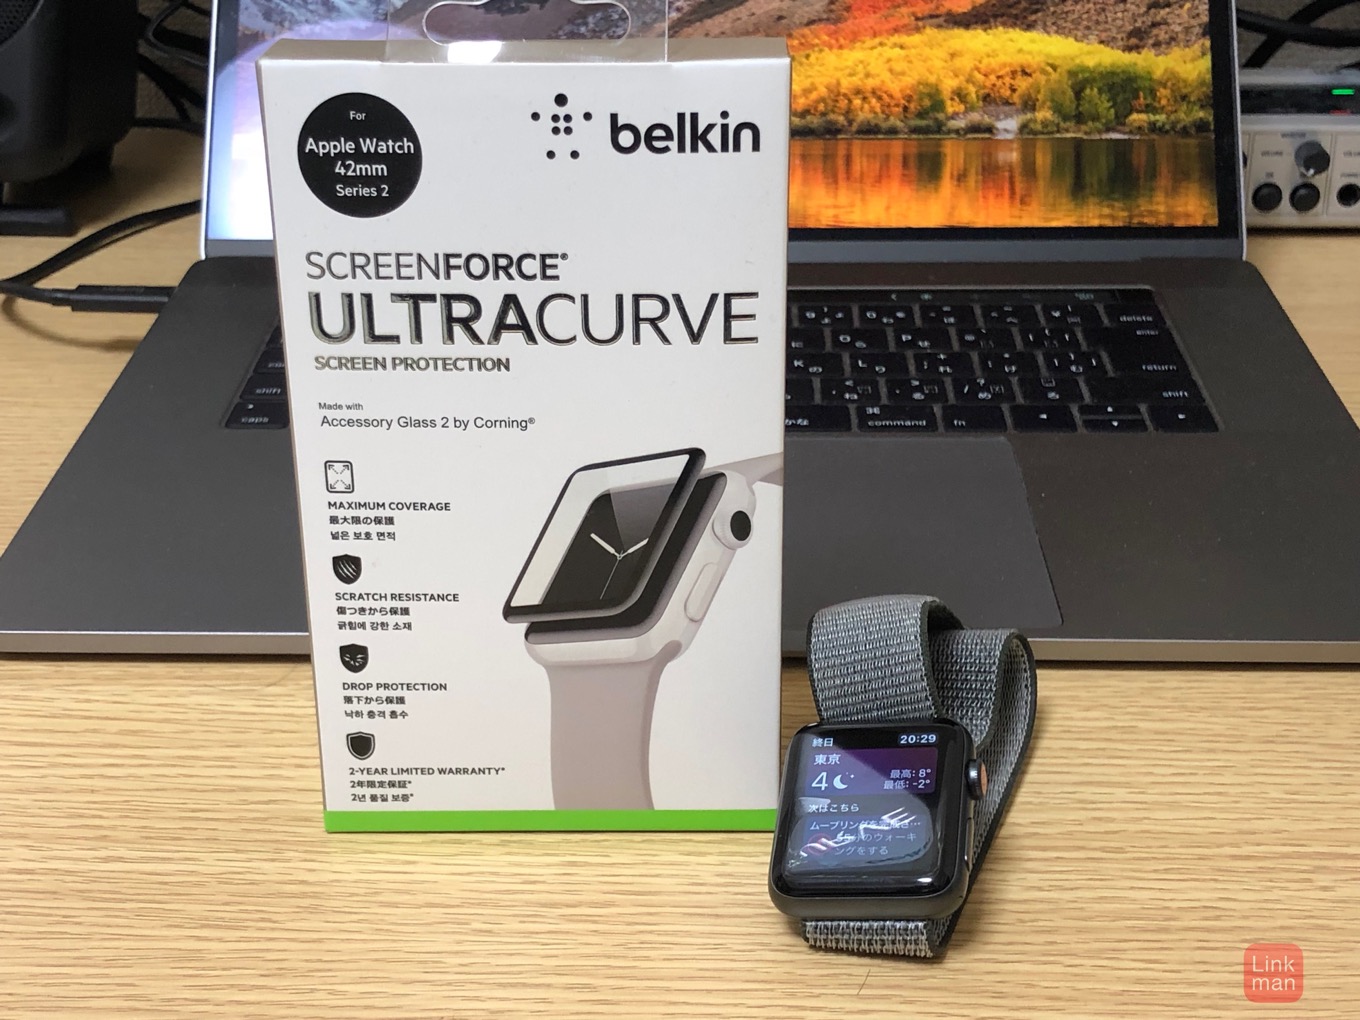 【レビュー】Apple Watch用スクリーン保護フィルム「Belkin ScreenForce UltraCurveスクリーンプロテクター」をチェック